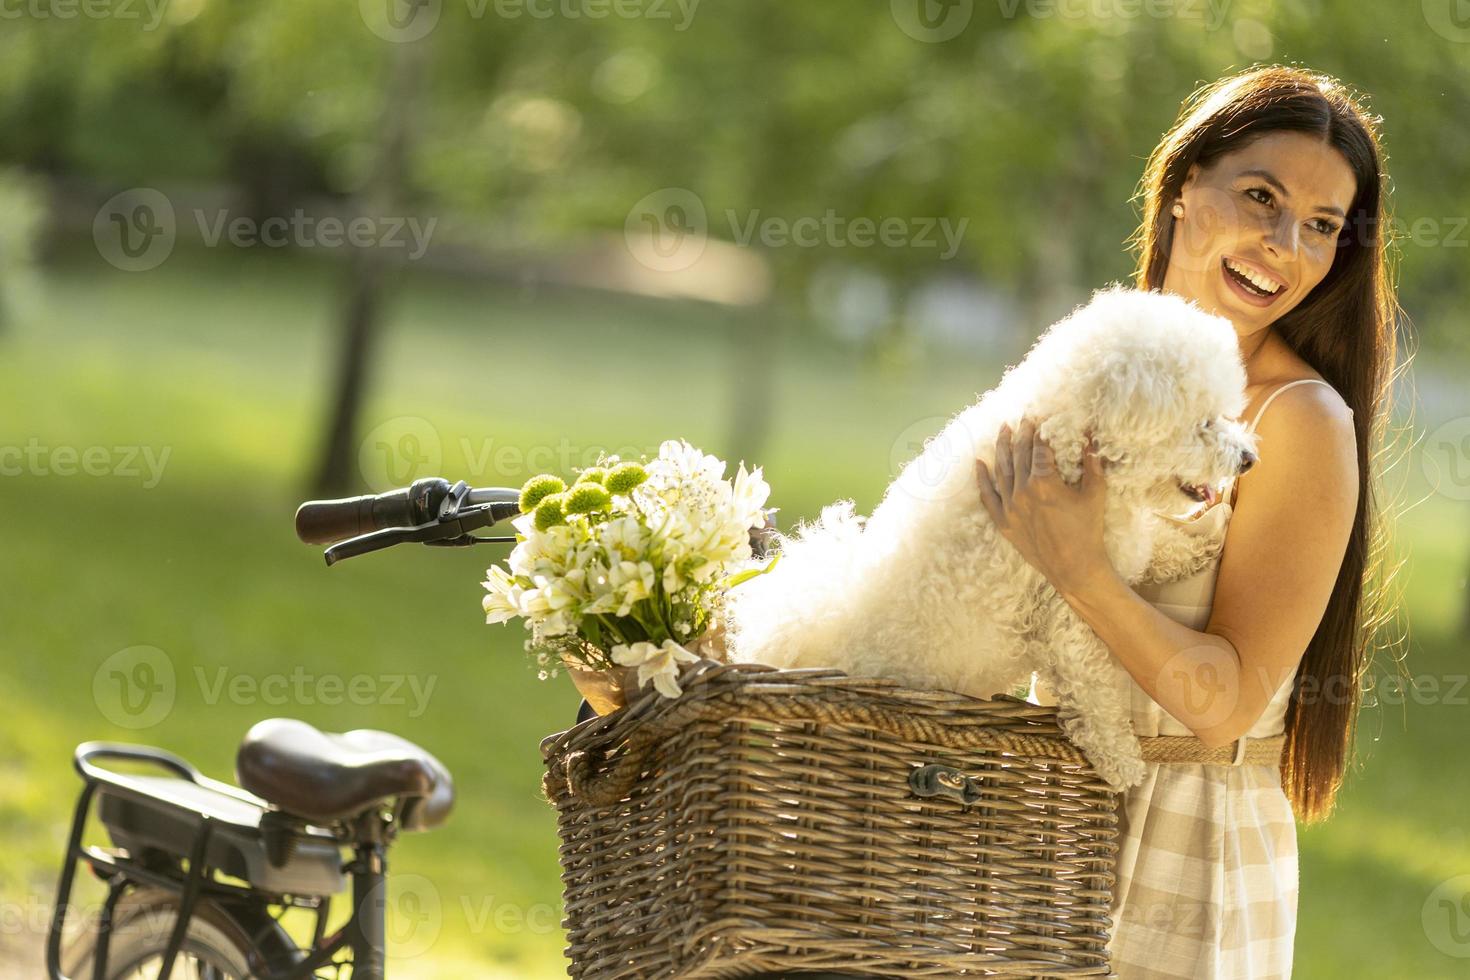 jonge vrouw met witte bichon frise hond in de mand van elektrische fiets foto